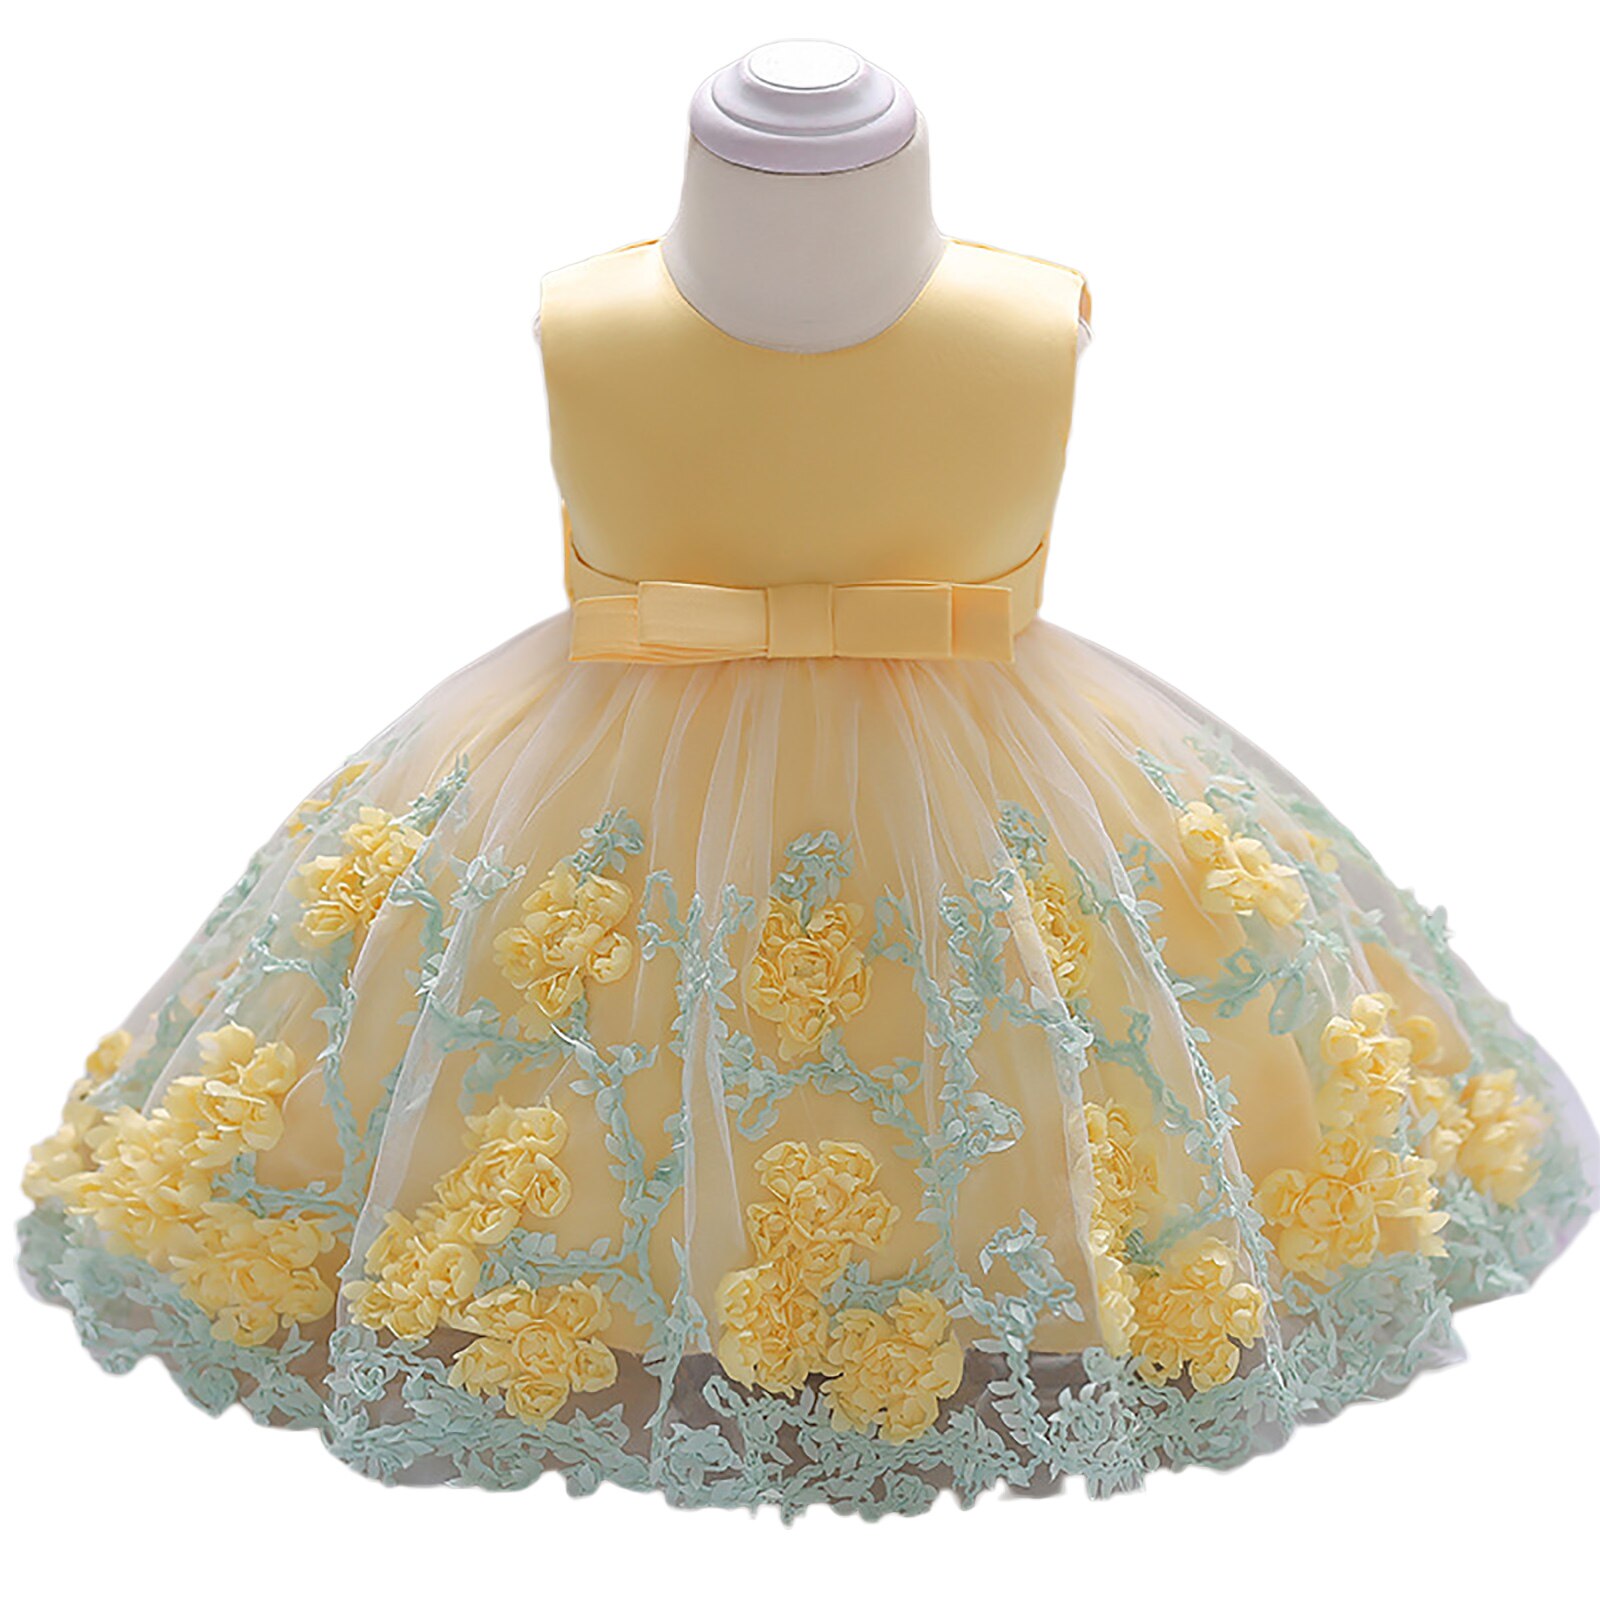 Citgeett Summer Infant Baby Girl abito senza maniche fiocco fiore pizzo ricamo abiti da principessa: B / 6m